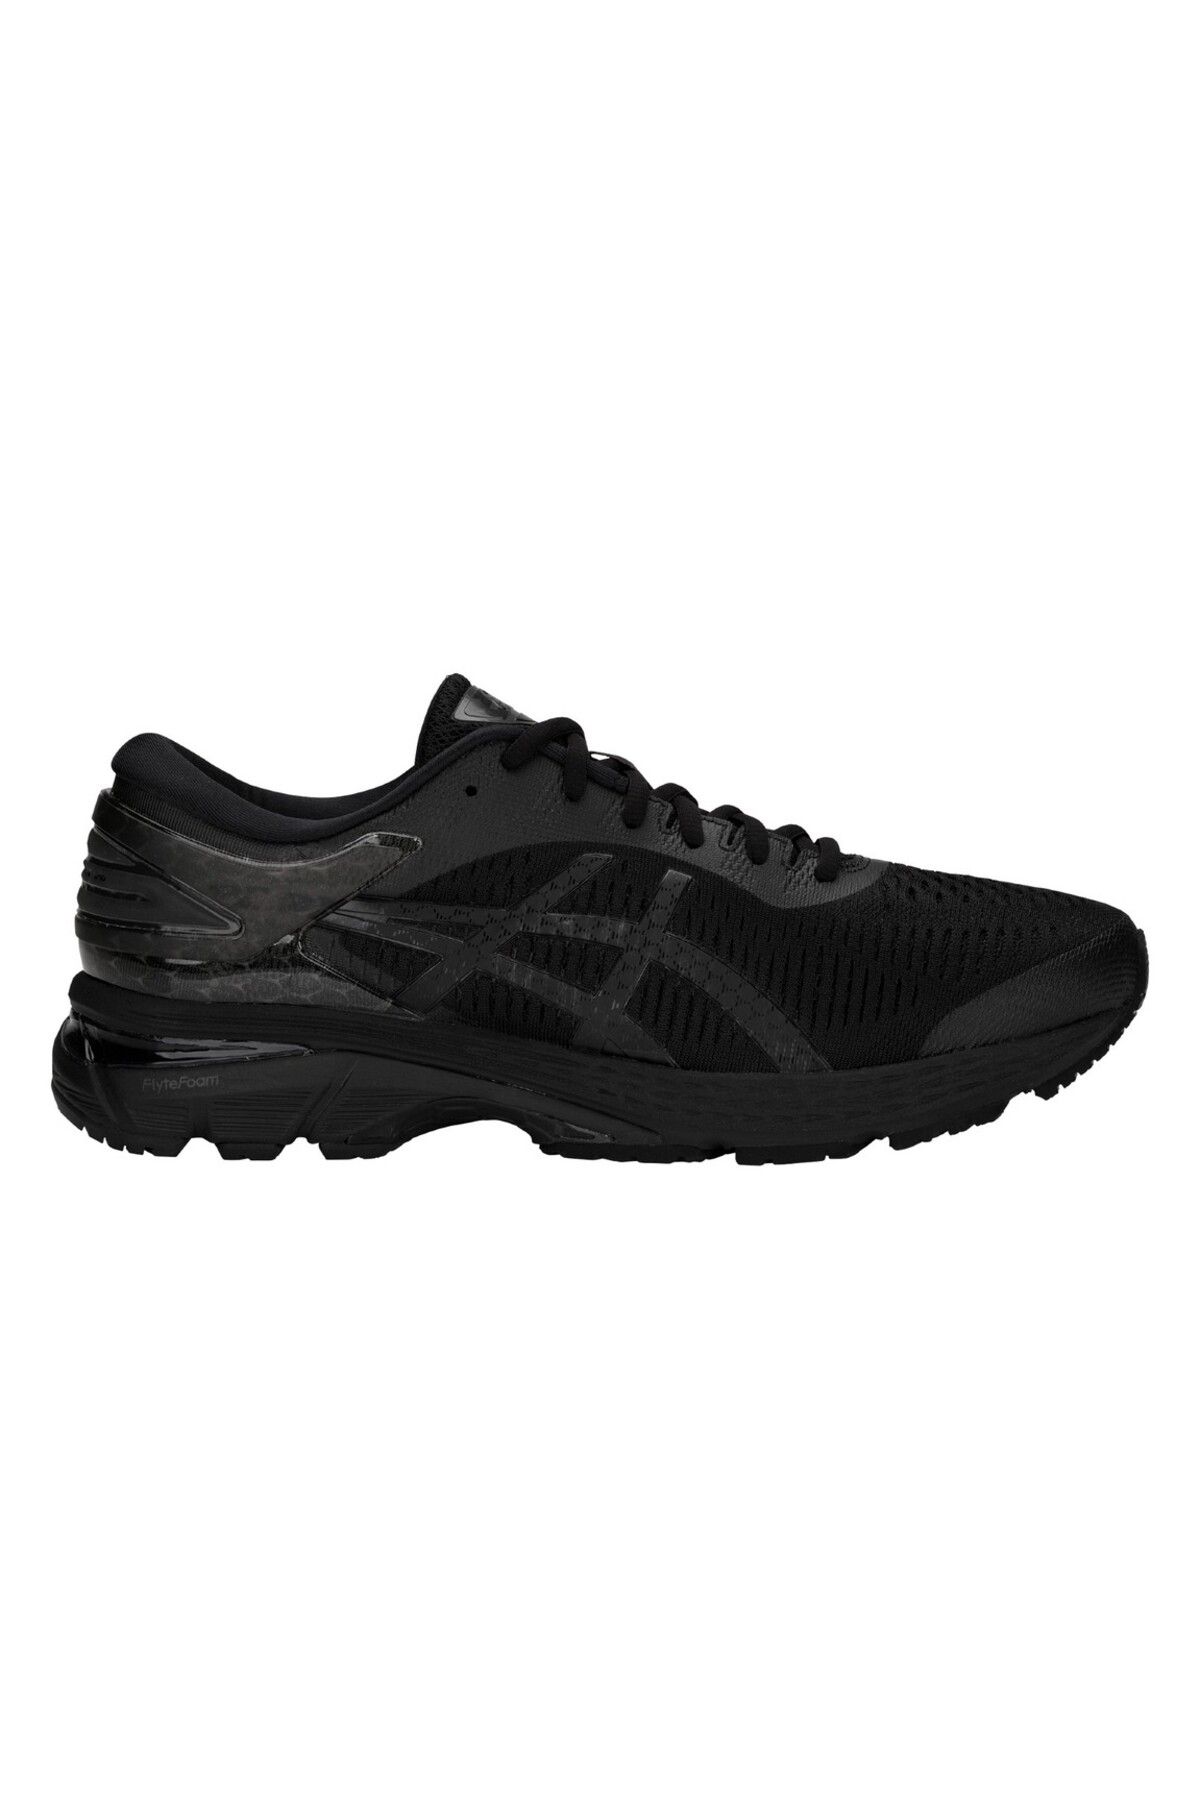 Asics Gel-kayano 25 Erkek Siyah Koşu Ayakkabısı 1011a019-002